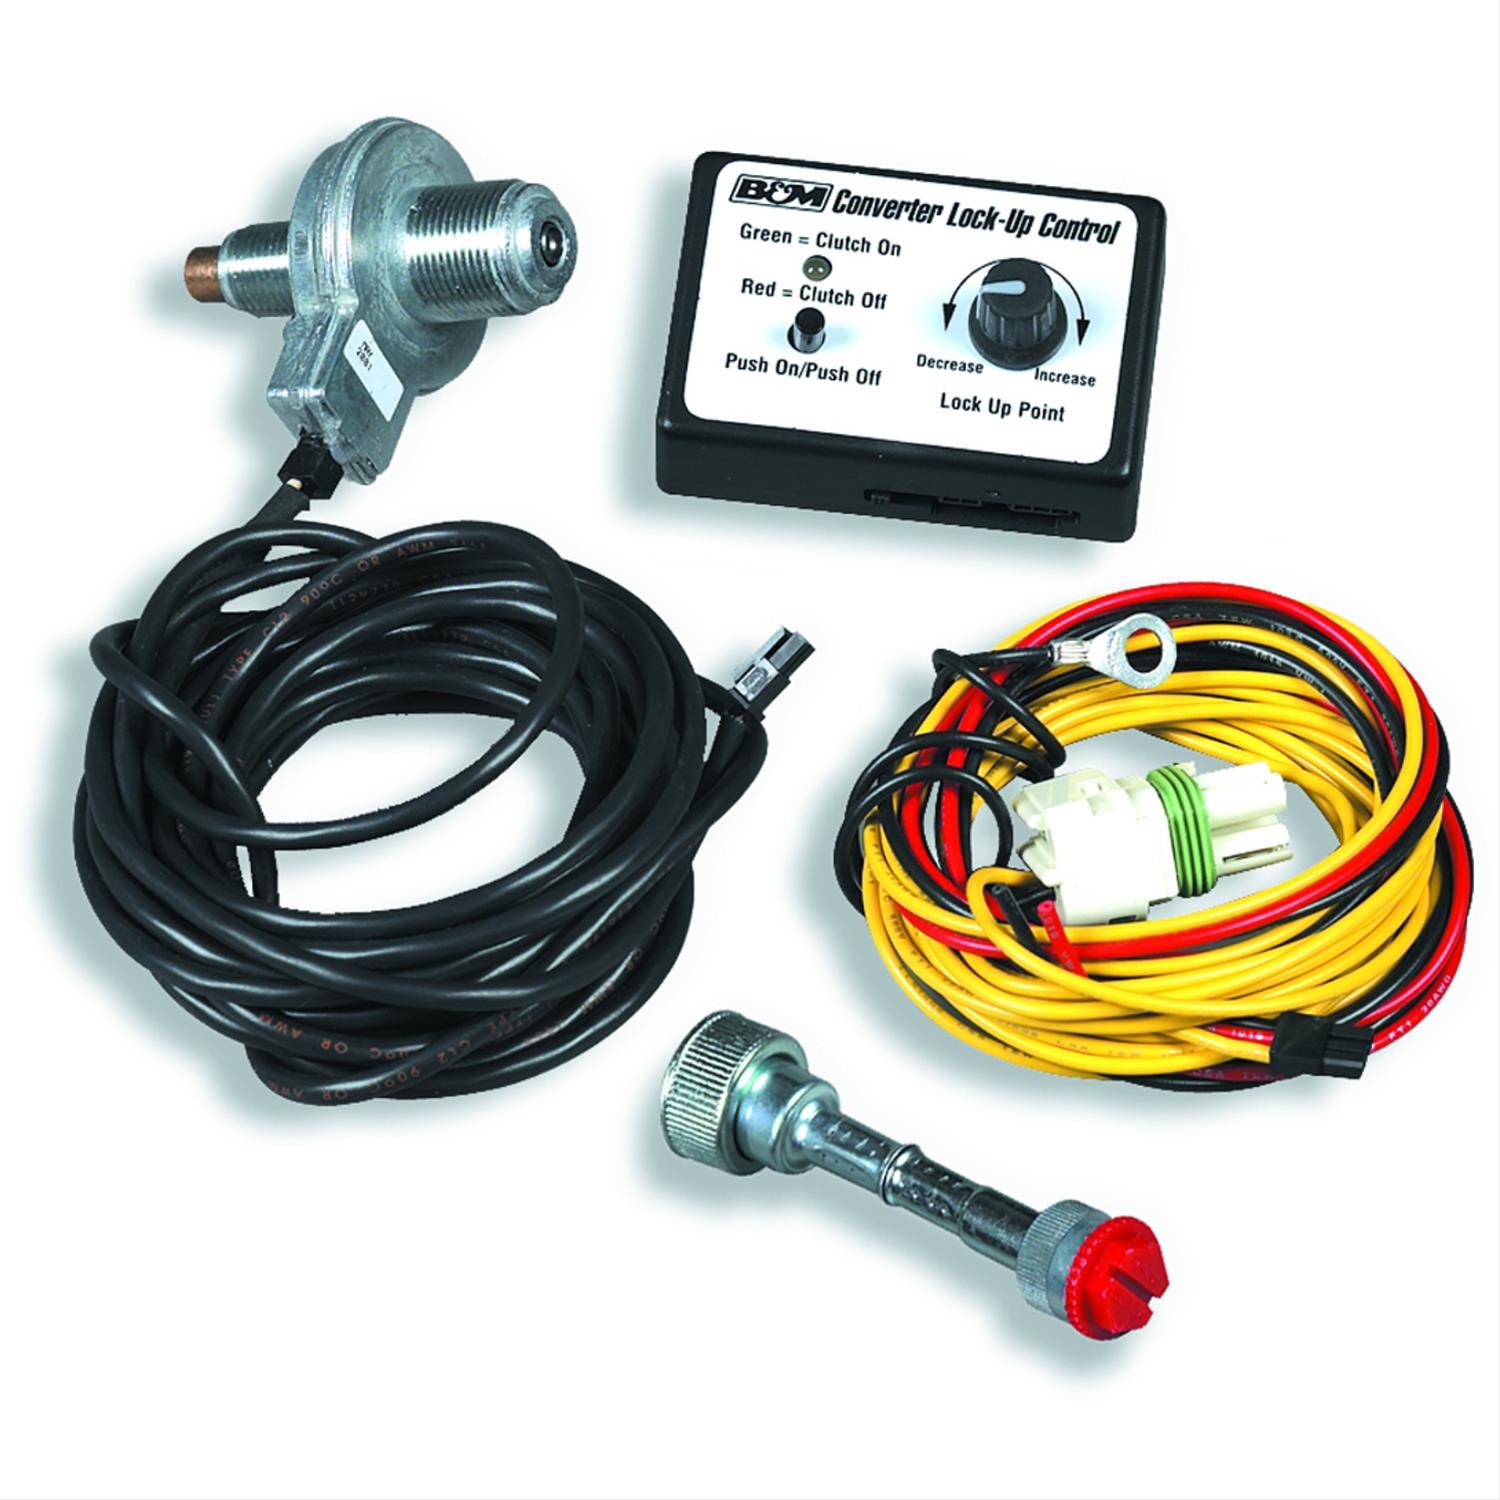 B&M 70244: Dash Mounted Converter Lockup Controller GM ... gm 700r4 wiring diagram 